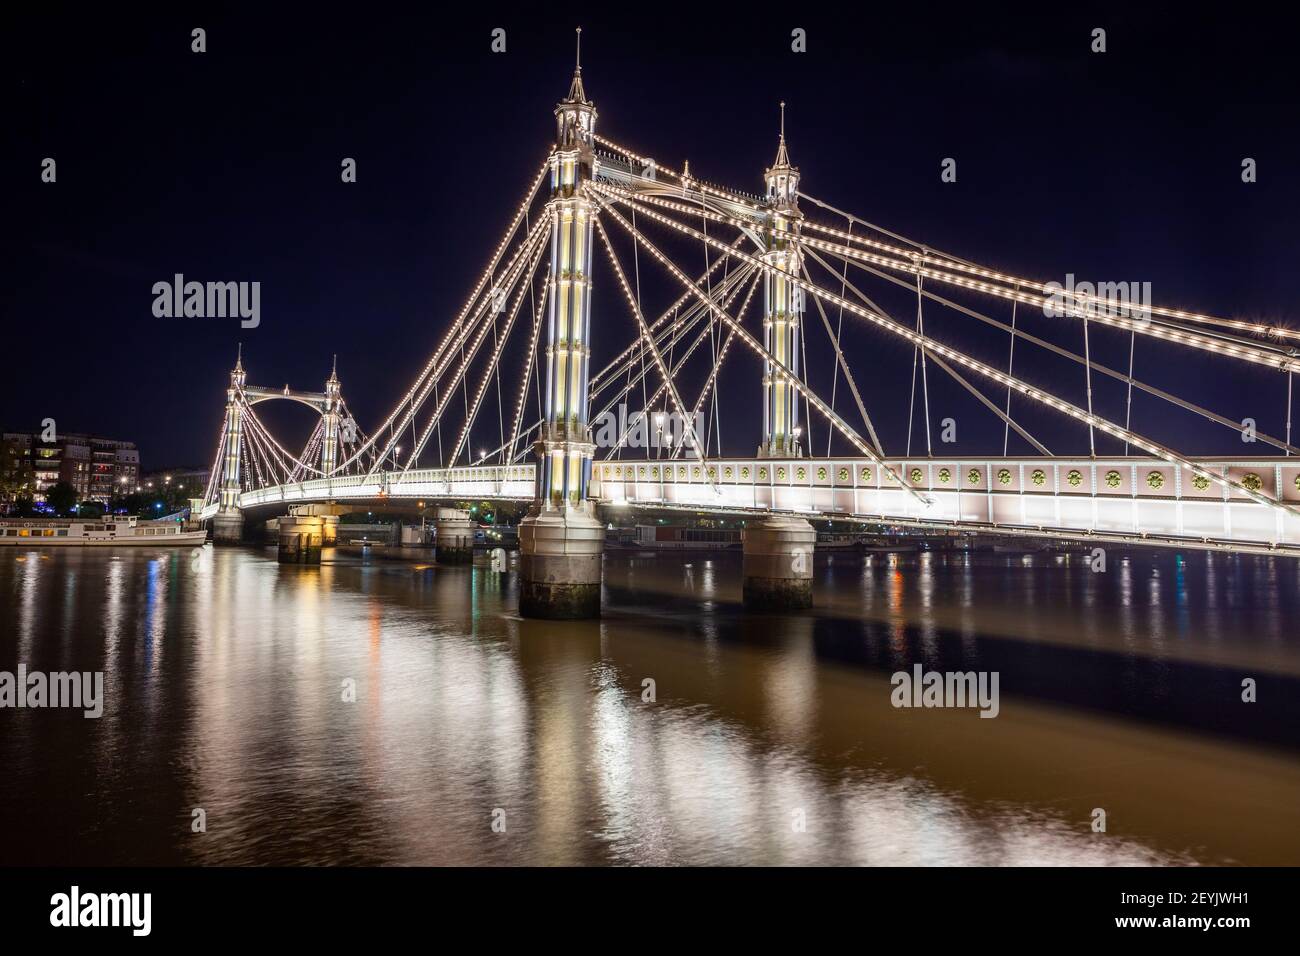 Royaume-Uni, Angleterre, Londres, Battersea, Albert Bridge de nuit sur la Tamise Banque D'Images